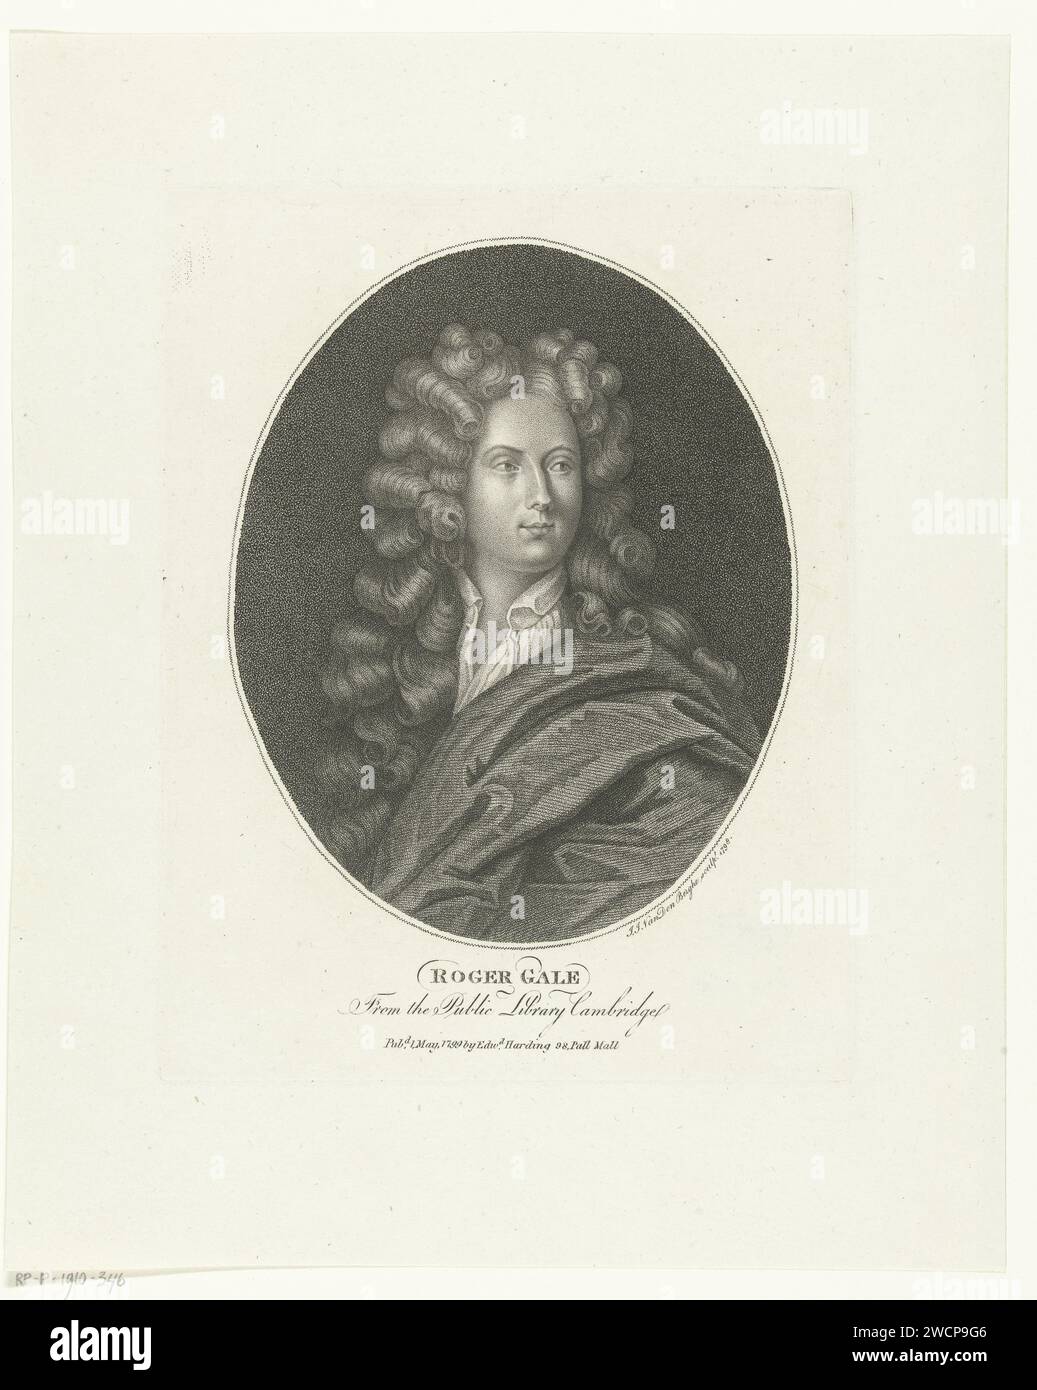 Porträt von Roger Gale, Ignatius Joseph van den Berghe, Druckstich aus dem Jahr 1798 Stockfoto